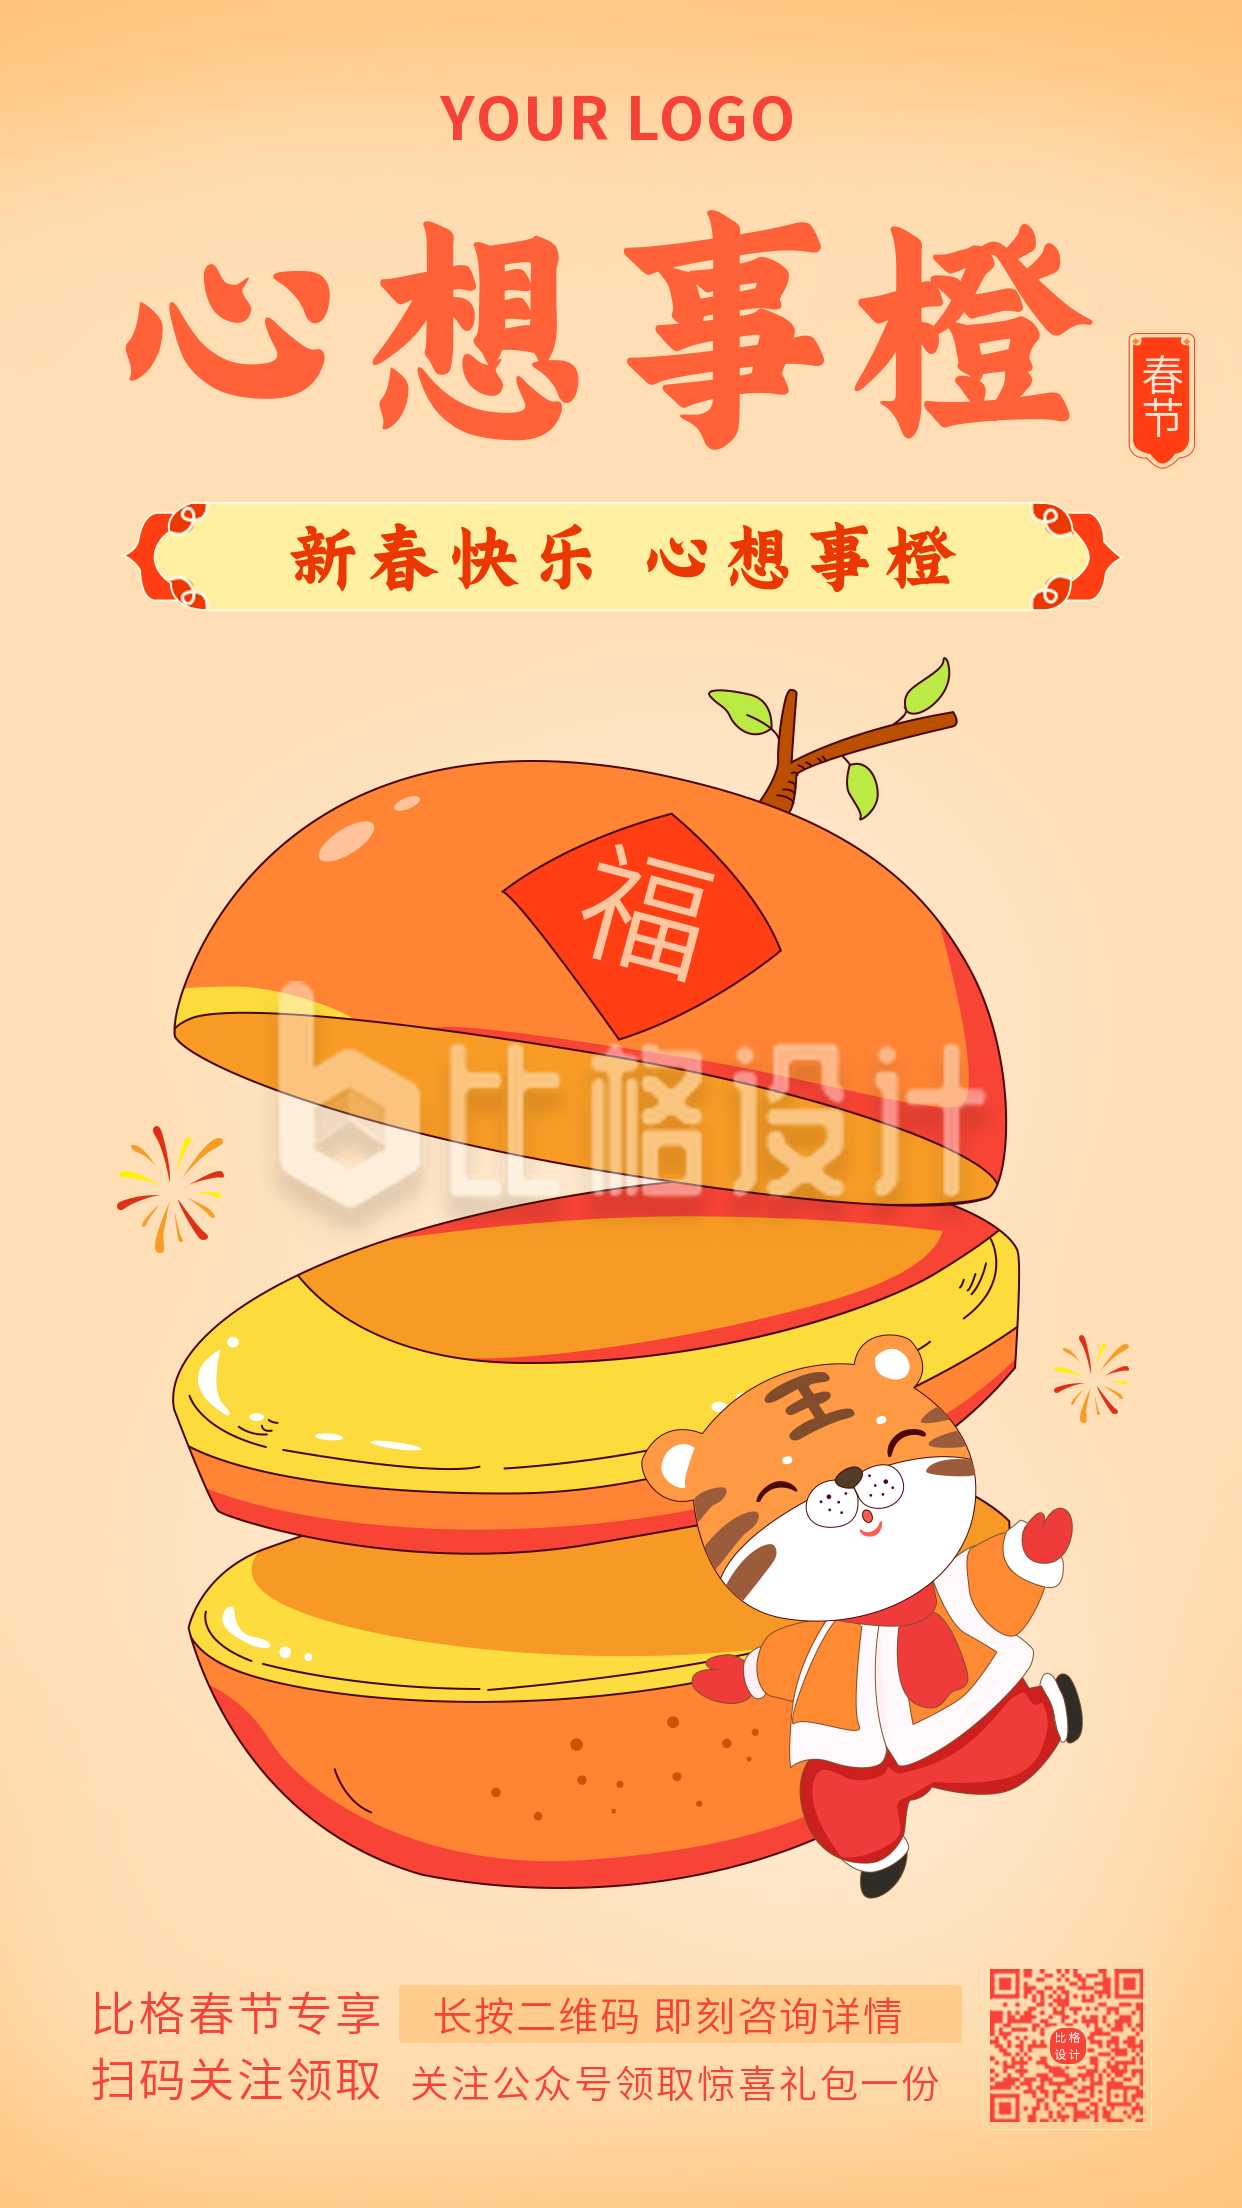 春节祝福心想事橙网络热词手绘老虎手机海报